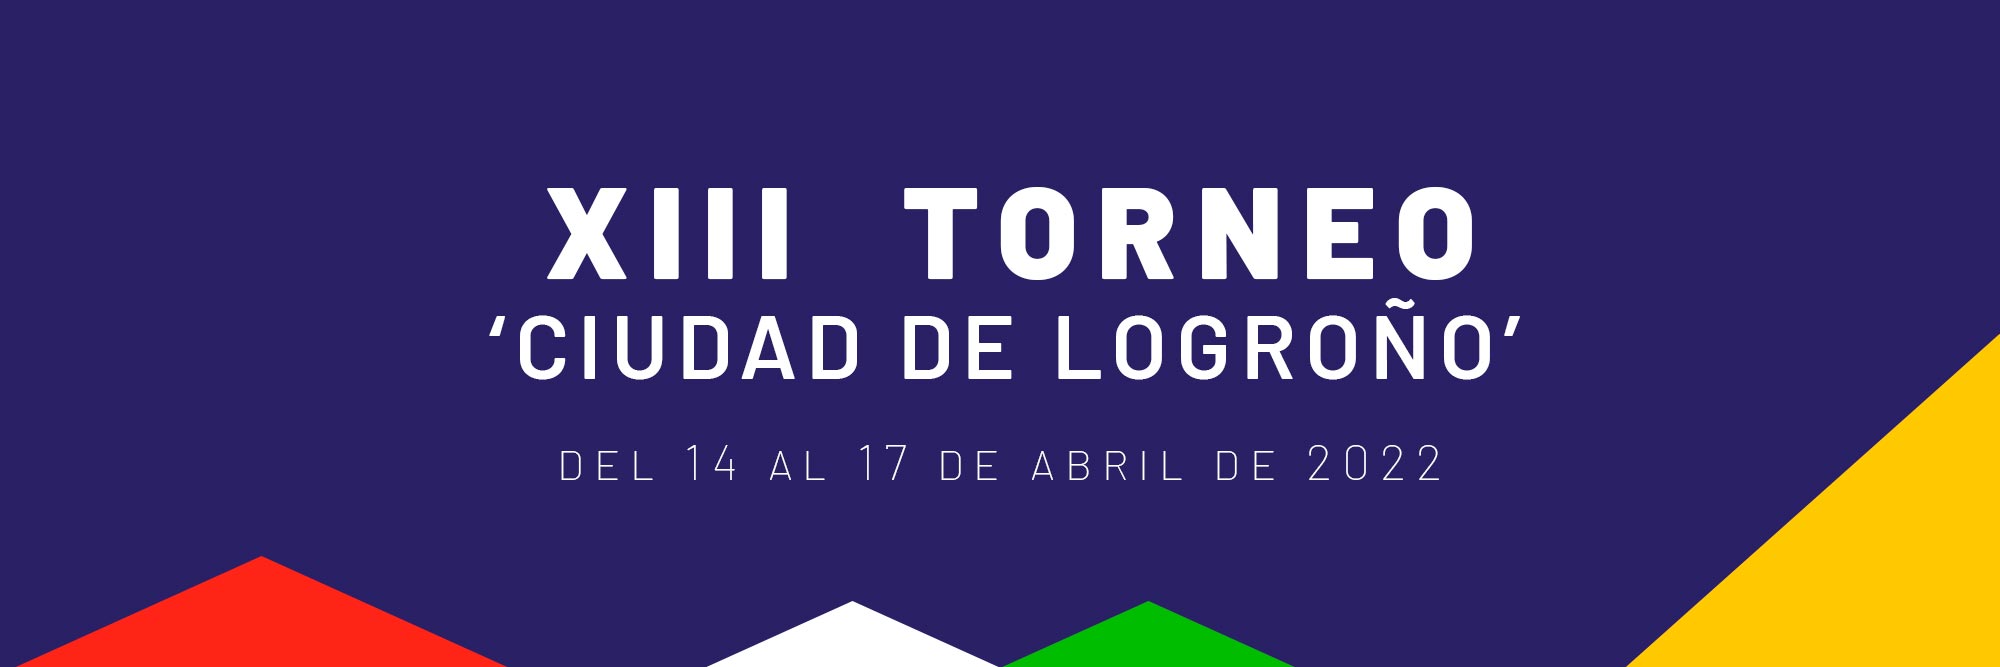 TORNEO | XIII Torneo Ciudad de Logroño (14-17 abril 2022)